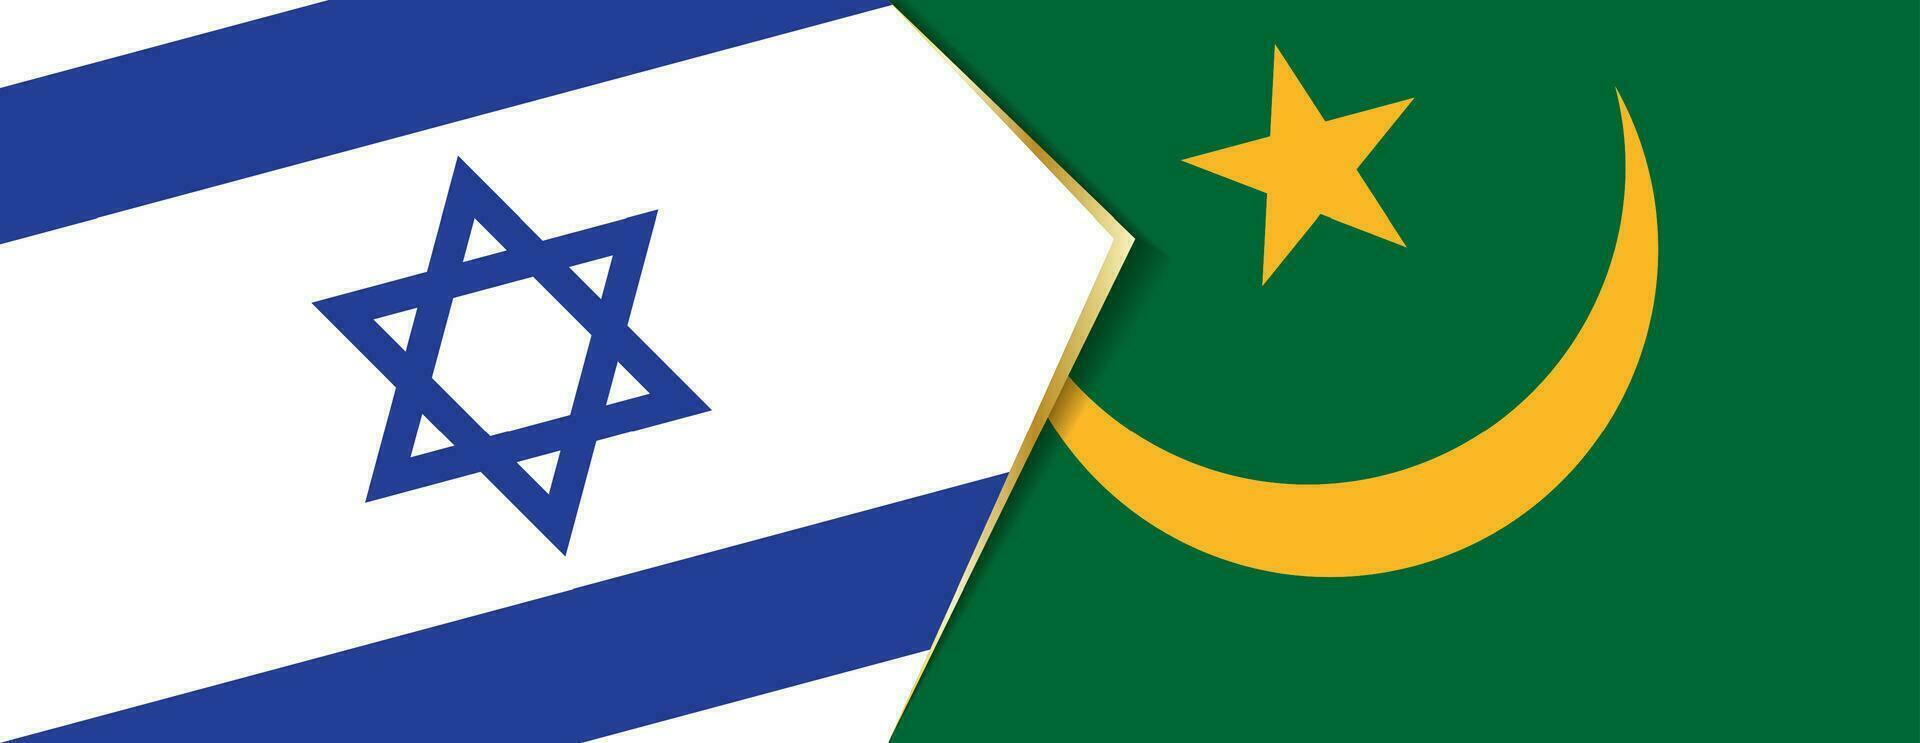 Israel y Mauritania banderas, dos vector banderas